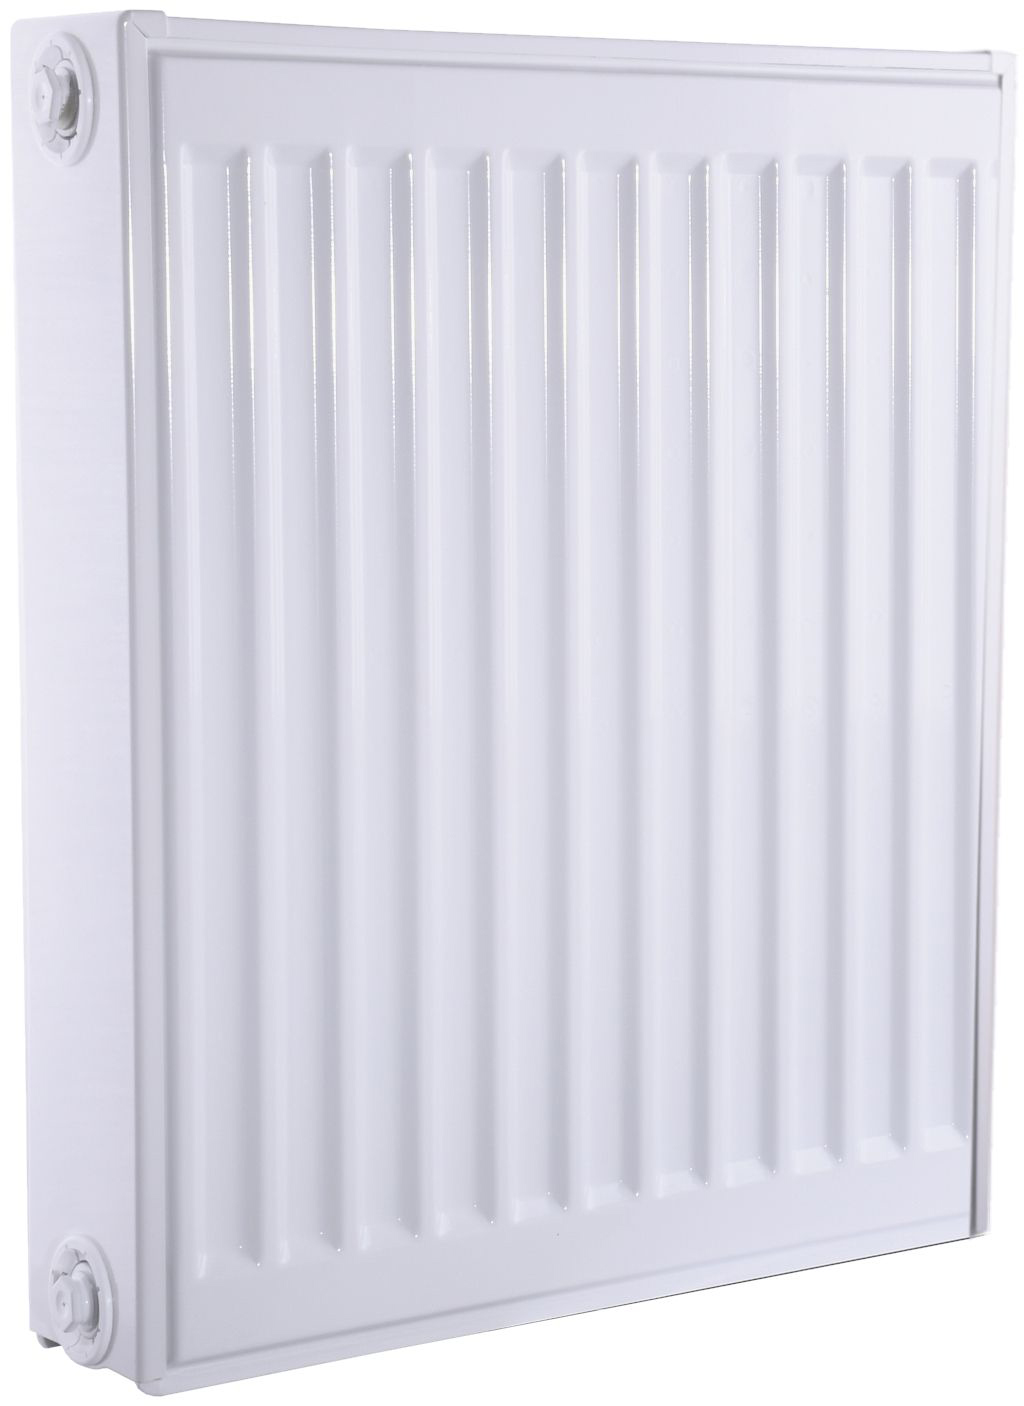 Радиатор для отопления Queen Therm 22 бок 500x400